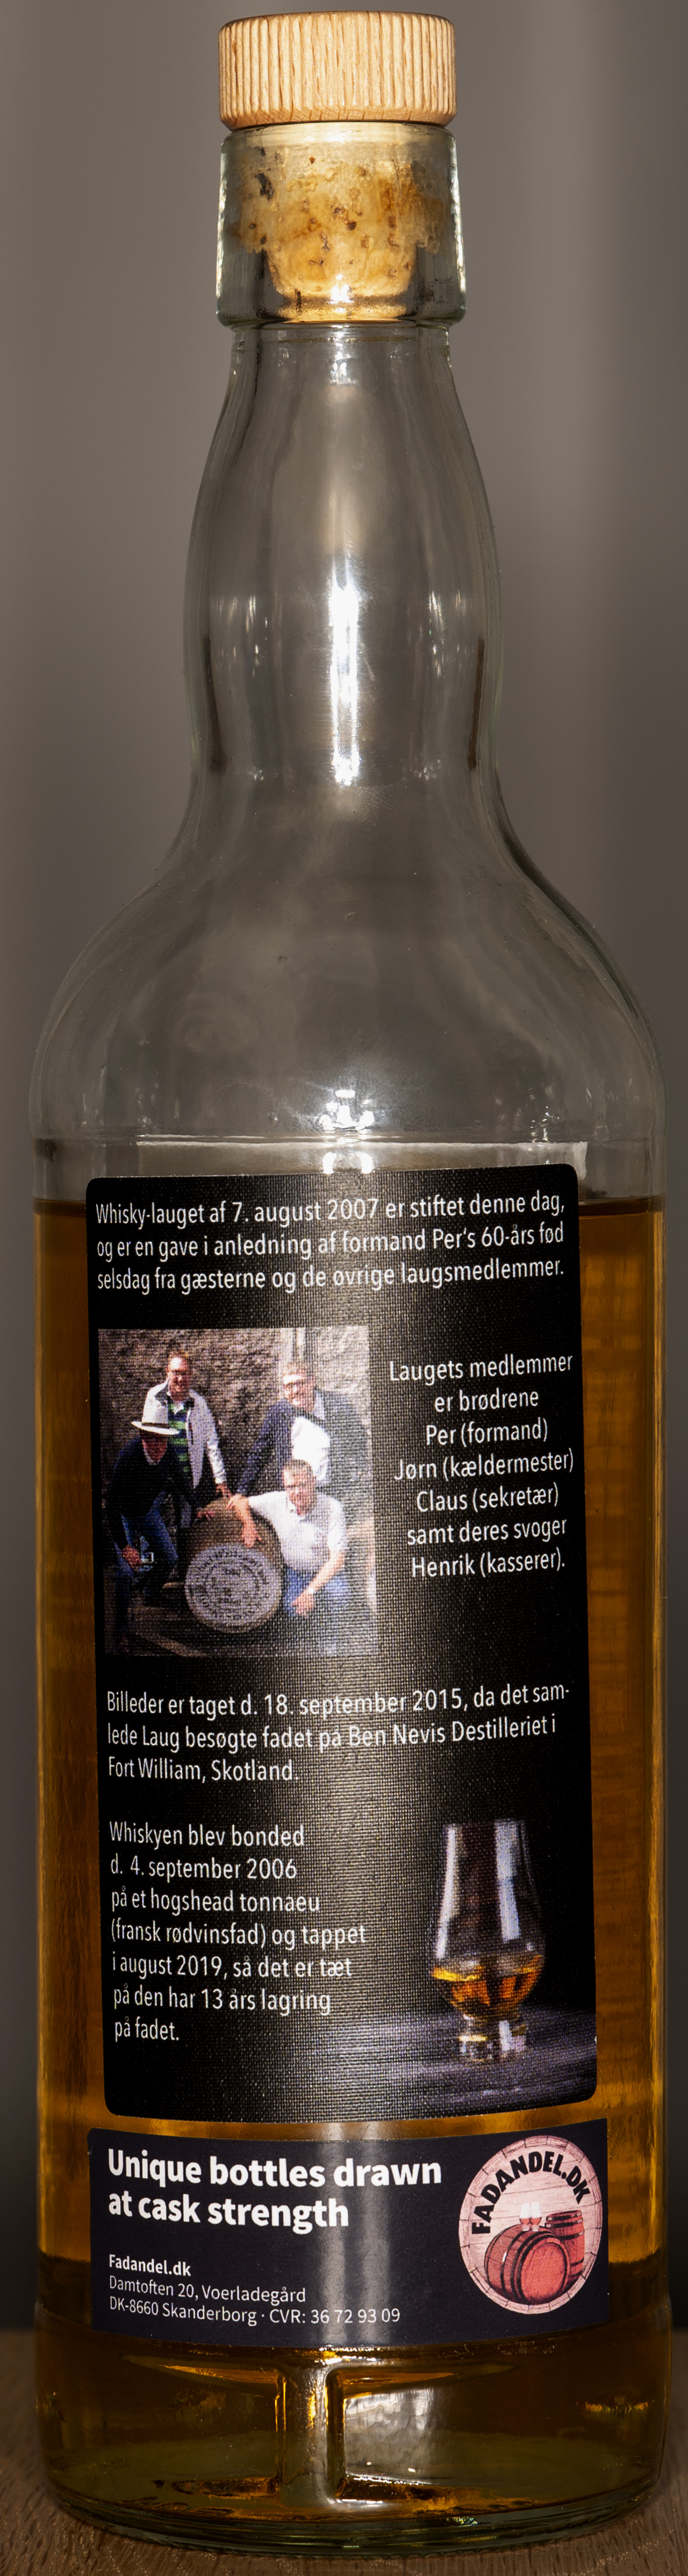 Billede: DSC_4771 - Ben Nevis Cask 394 12 years - bottle back.jpg